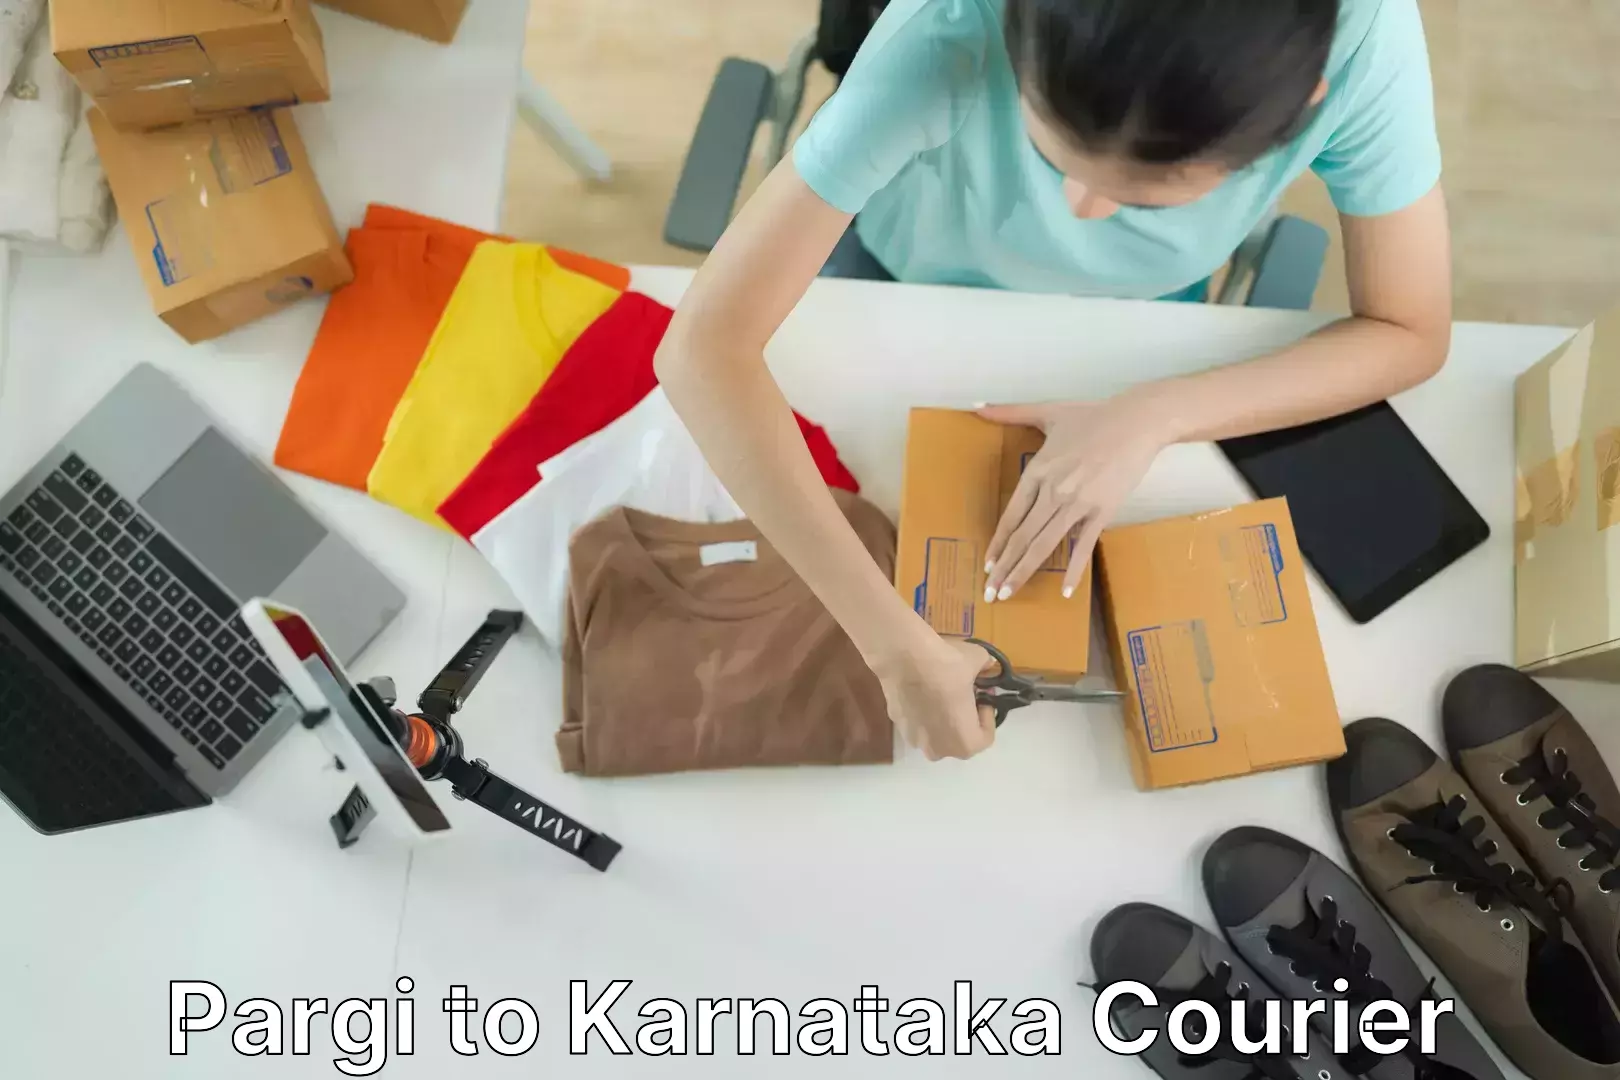 Furniture transport solutions Pargi to Karnataka